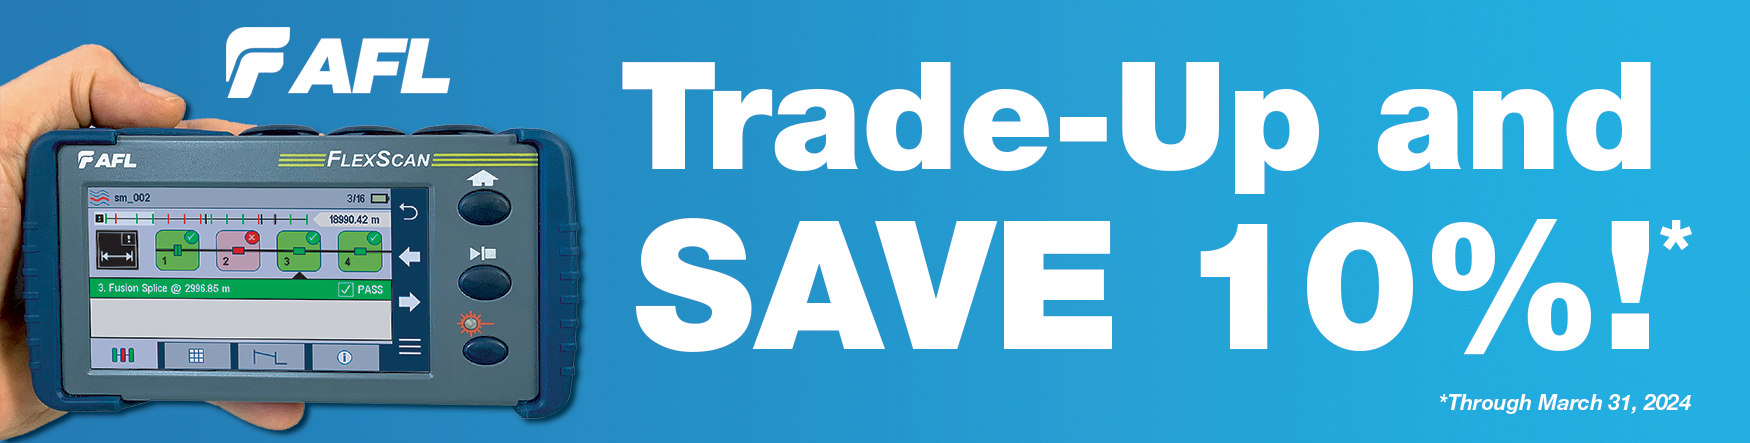 AFL FlexScan FS200 Trade-Up and SAVE 10%!